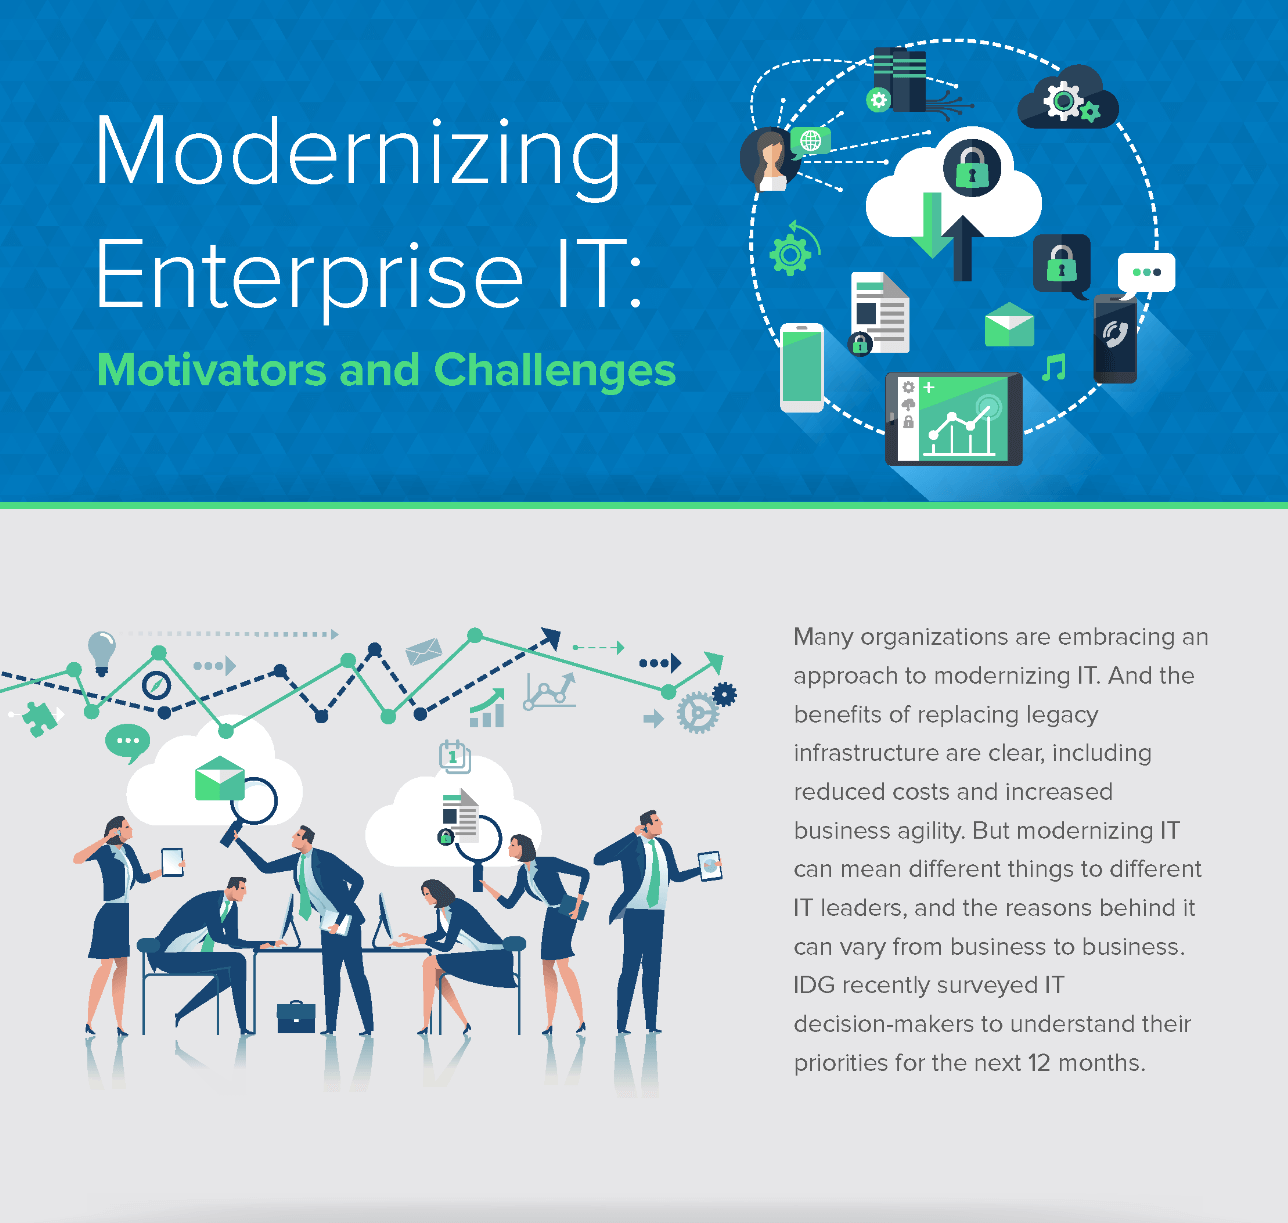 Modernizing Enterprise IT: Motivators and Challenges